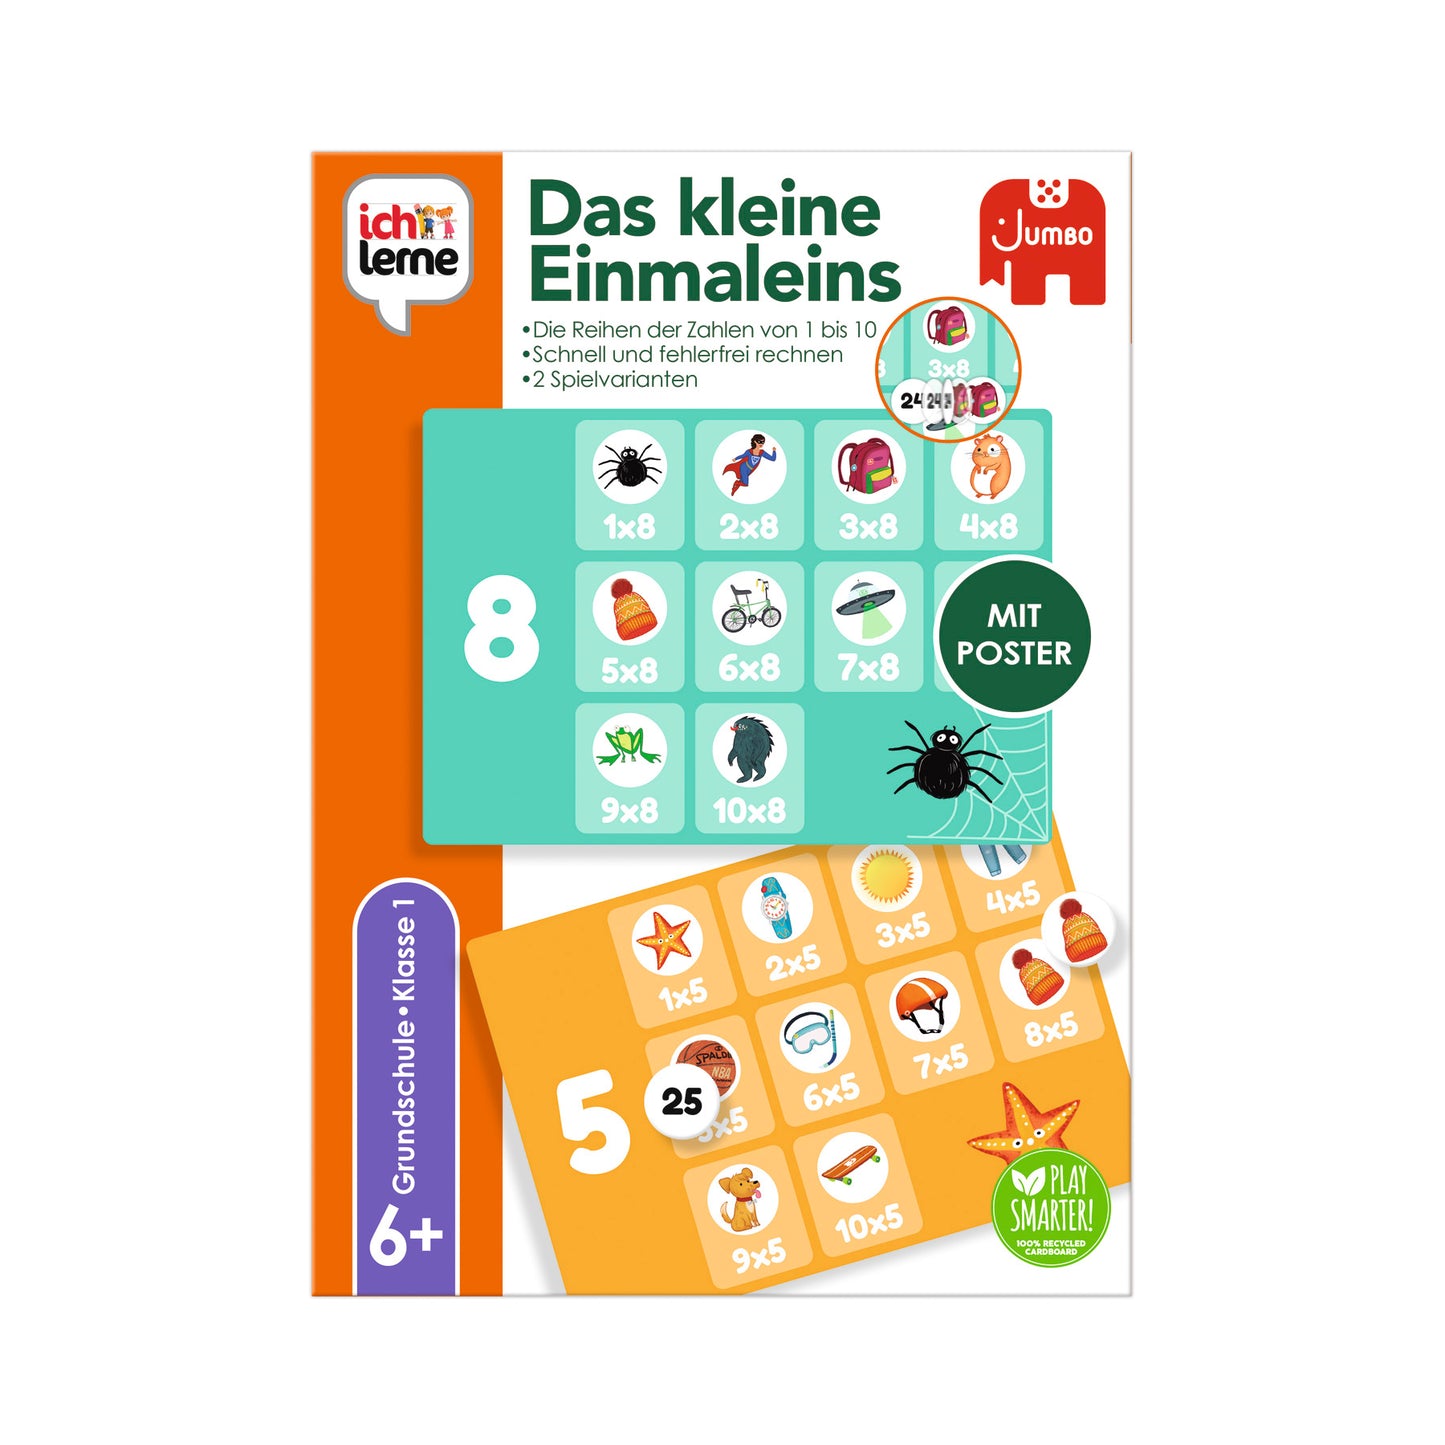 Das kleine Einsmaleins - product image - Jumboplay.com